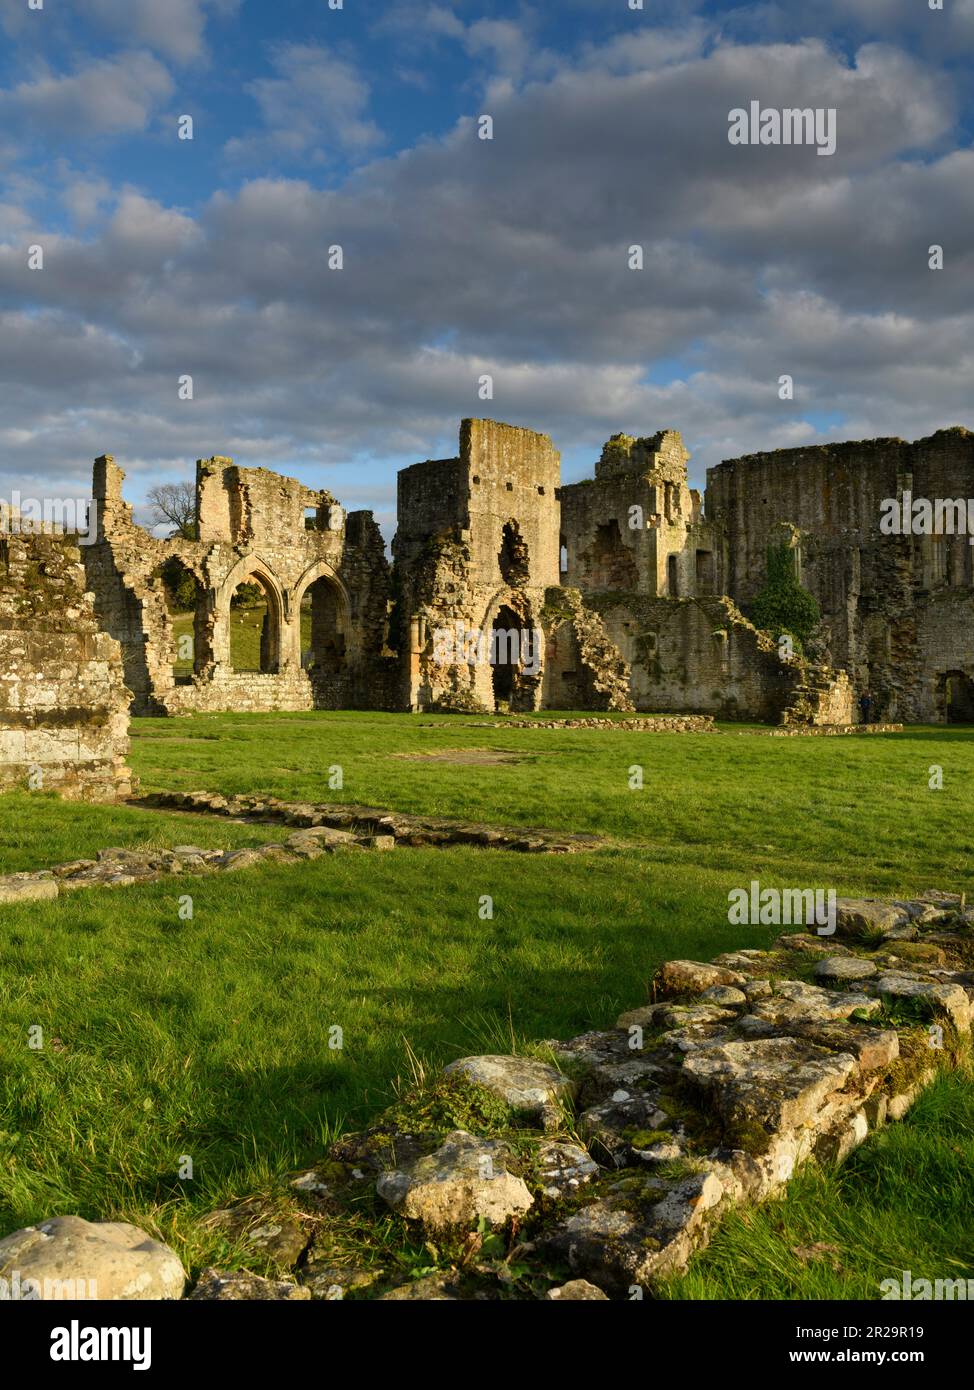 Pittoresco e bellissimo punto di riferimento medievale, Abbazia di Easby (13th ° secolo est range resti, pareti di pietra, chiostro, cielo drammatico) - Inghilterra UK. Foto Stock